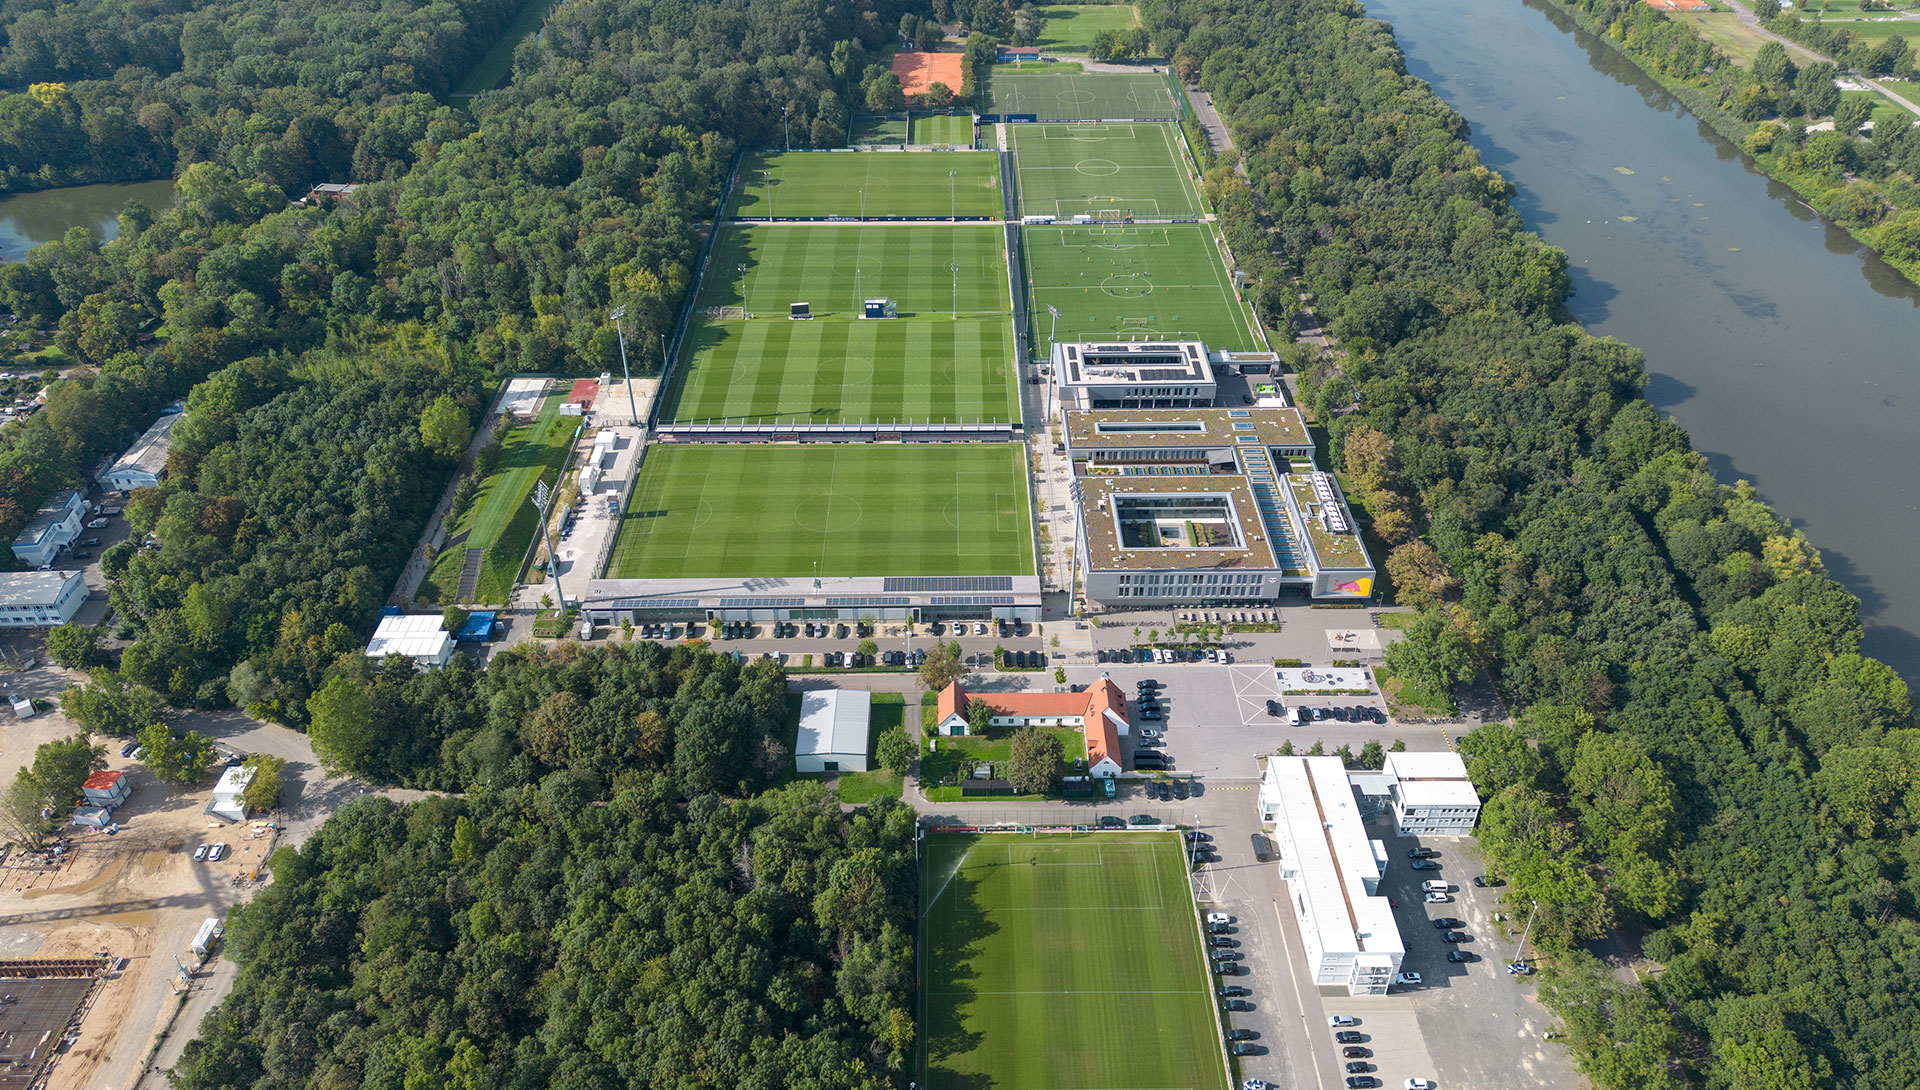 Trainingszentrum RB Leipzig, Luftaufnahme mit Gebäuden und Spielfeldern